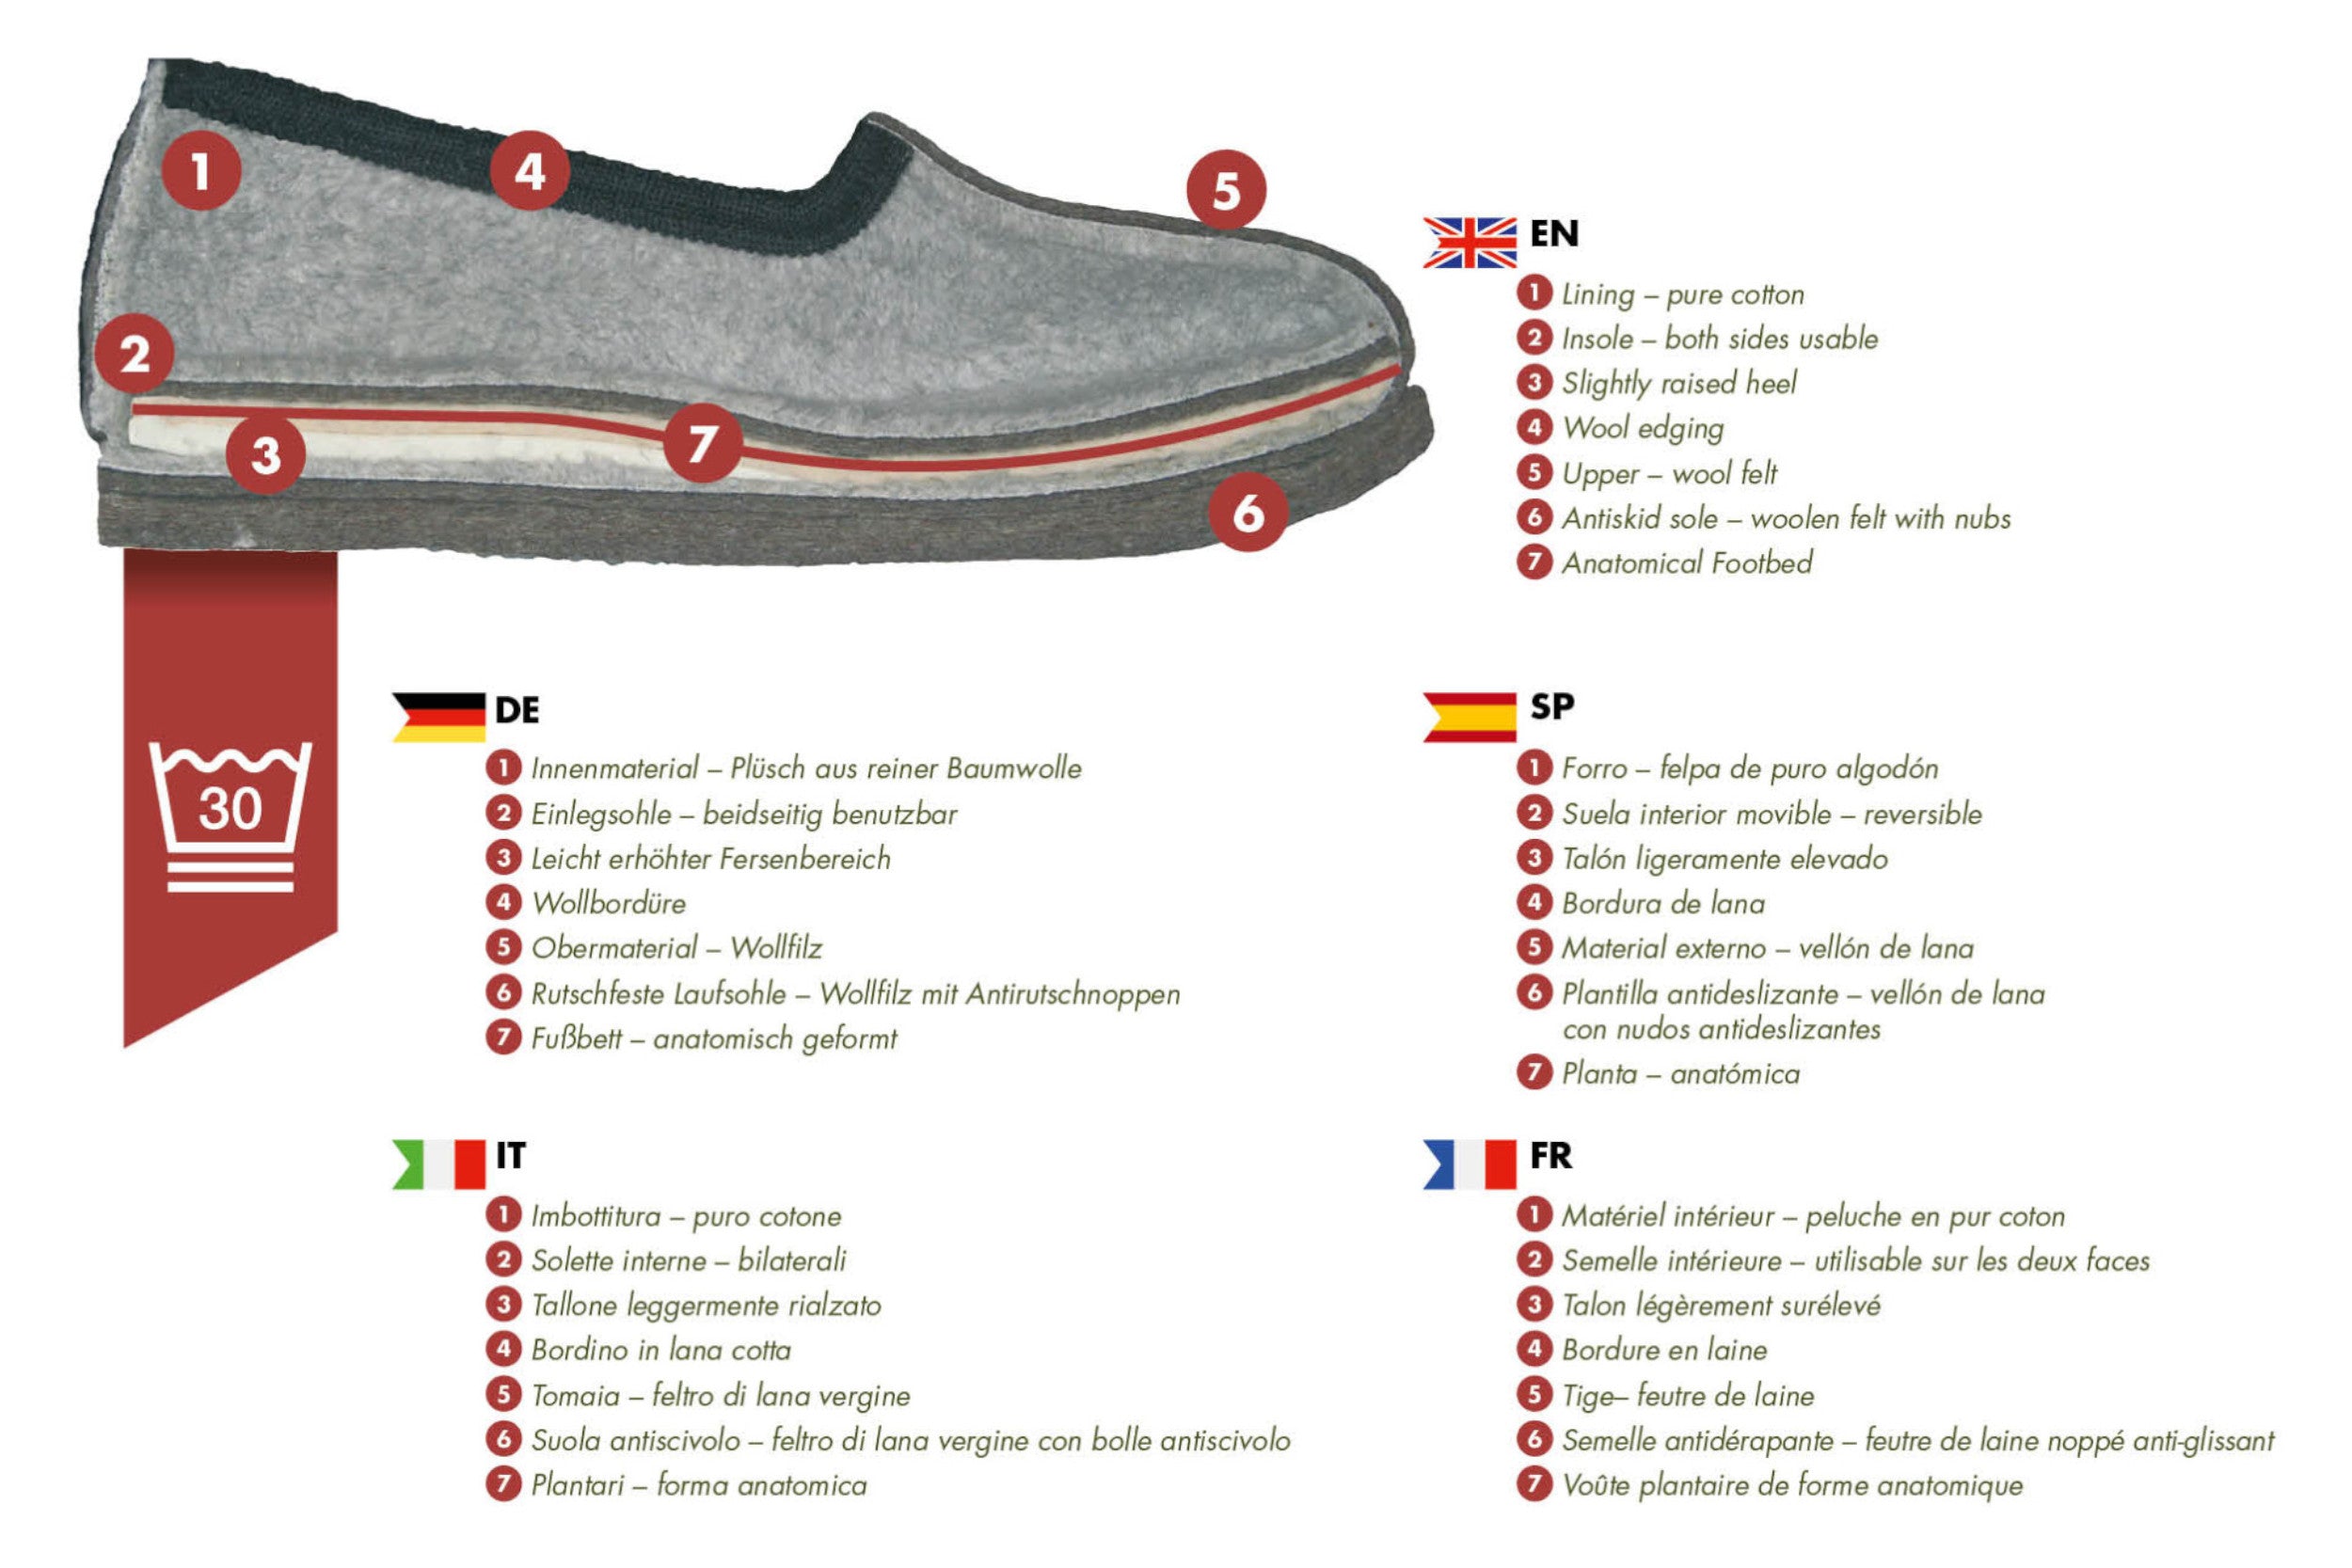 Pantofole in feltro CLASSIC- grigio con bordo nero